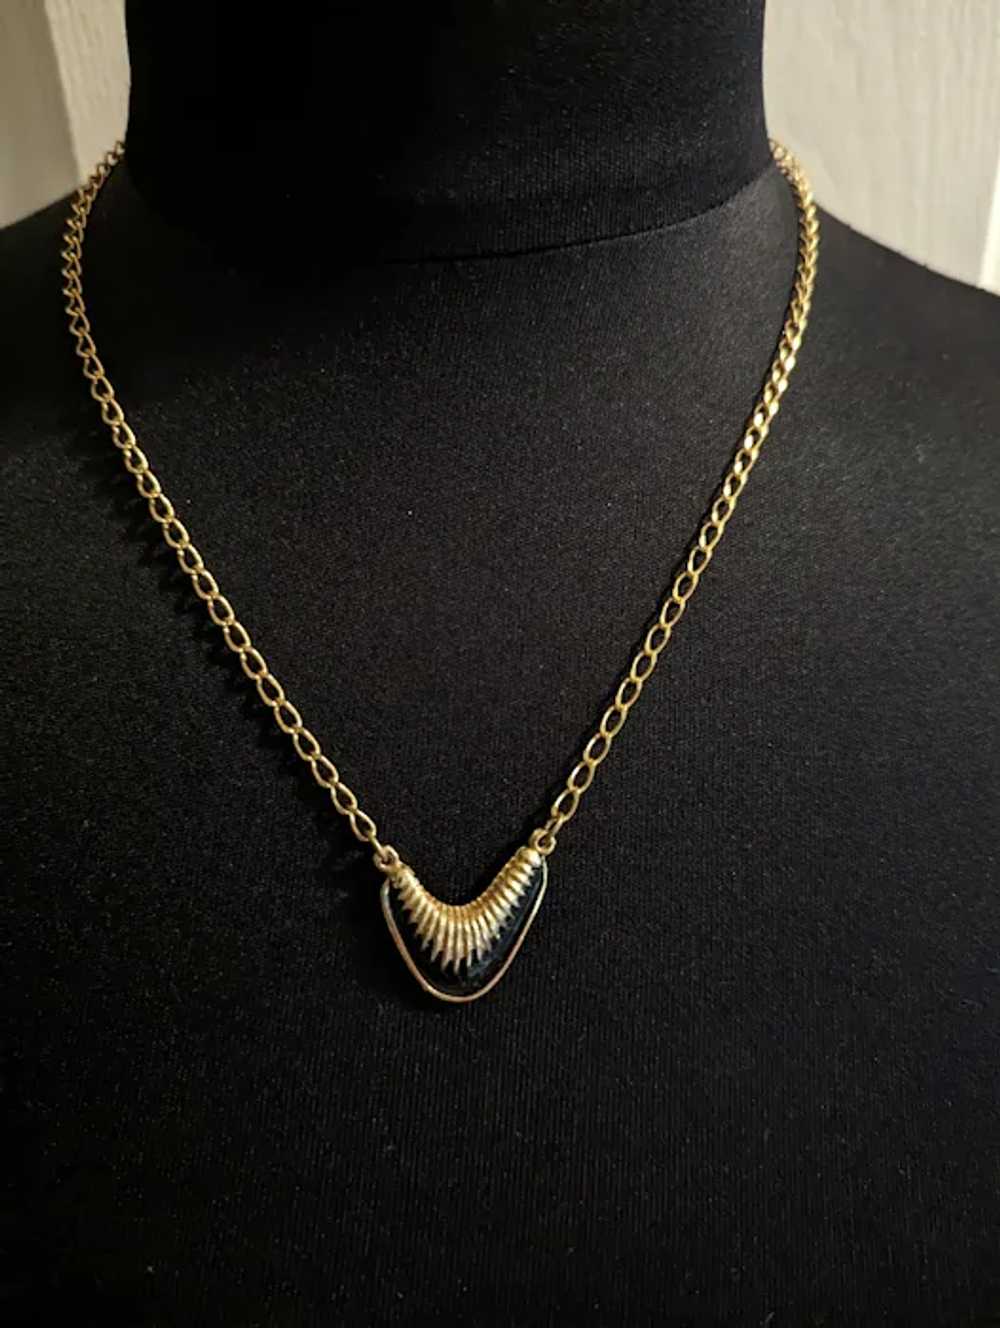 Black Enamel Gold Filled Necklace - image 3